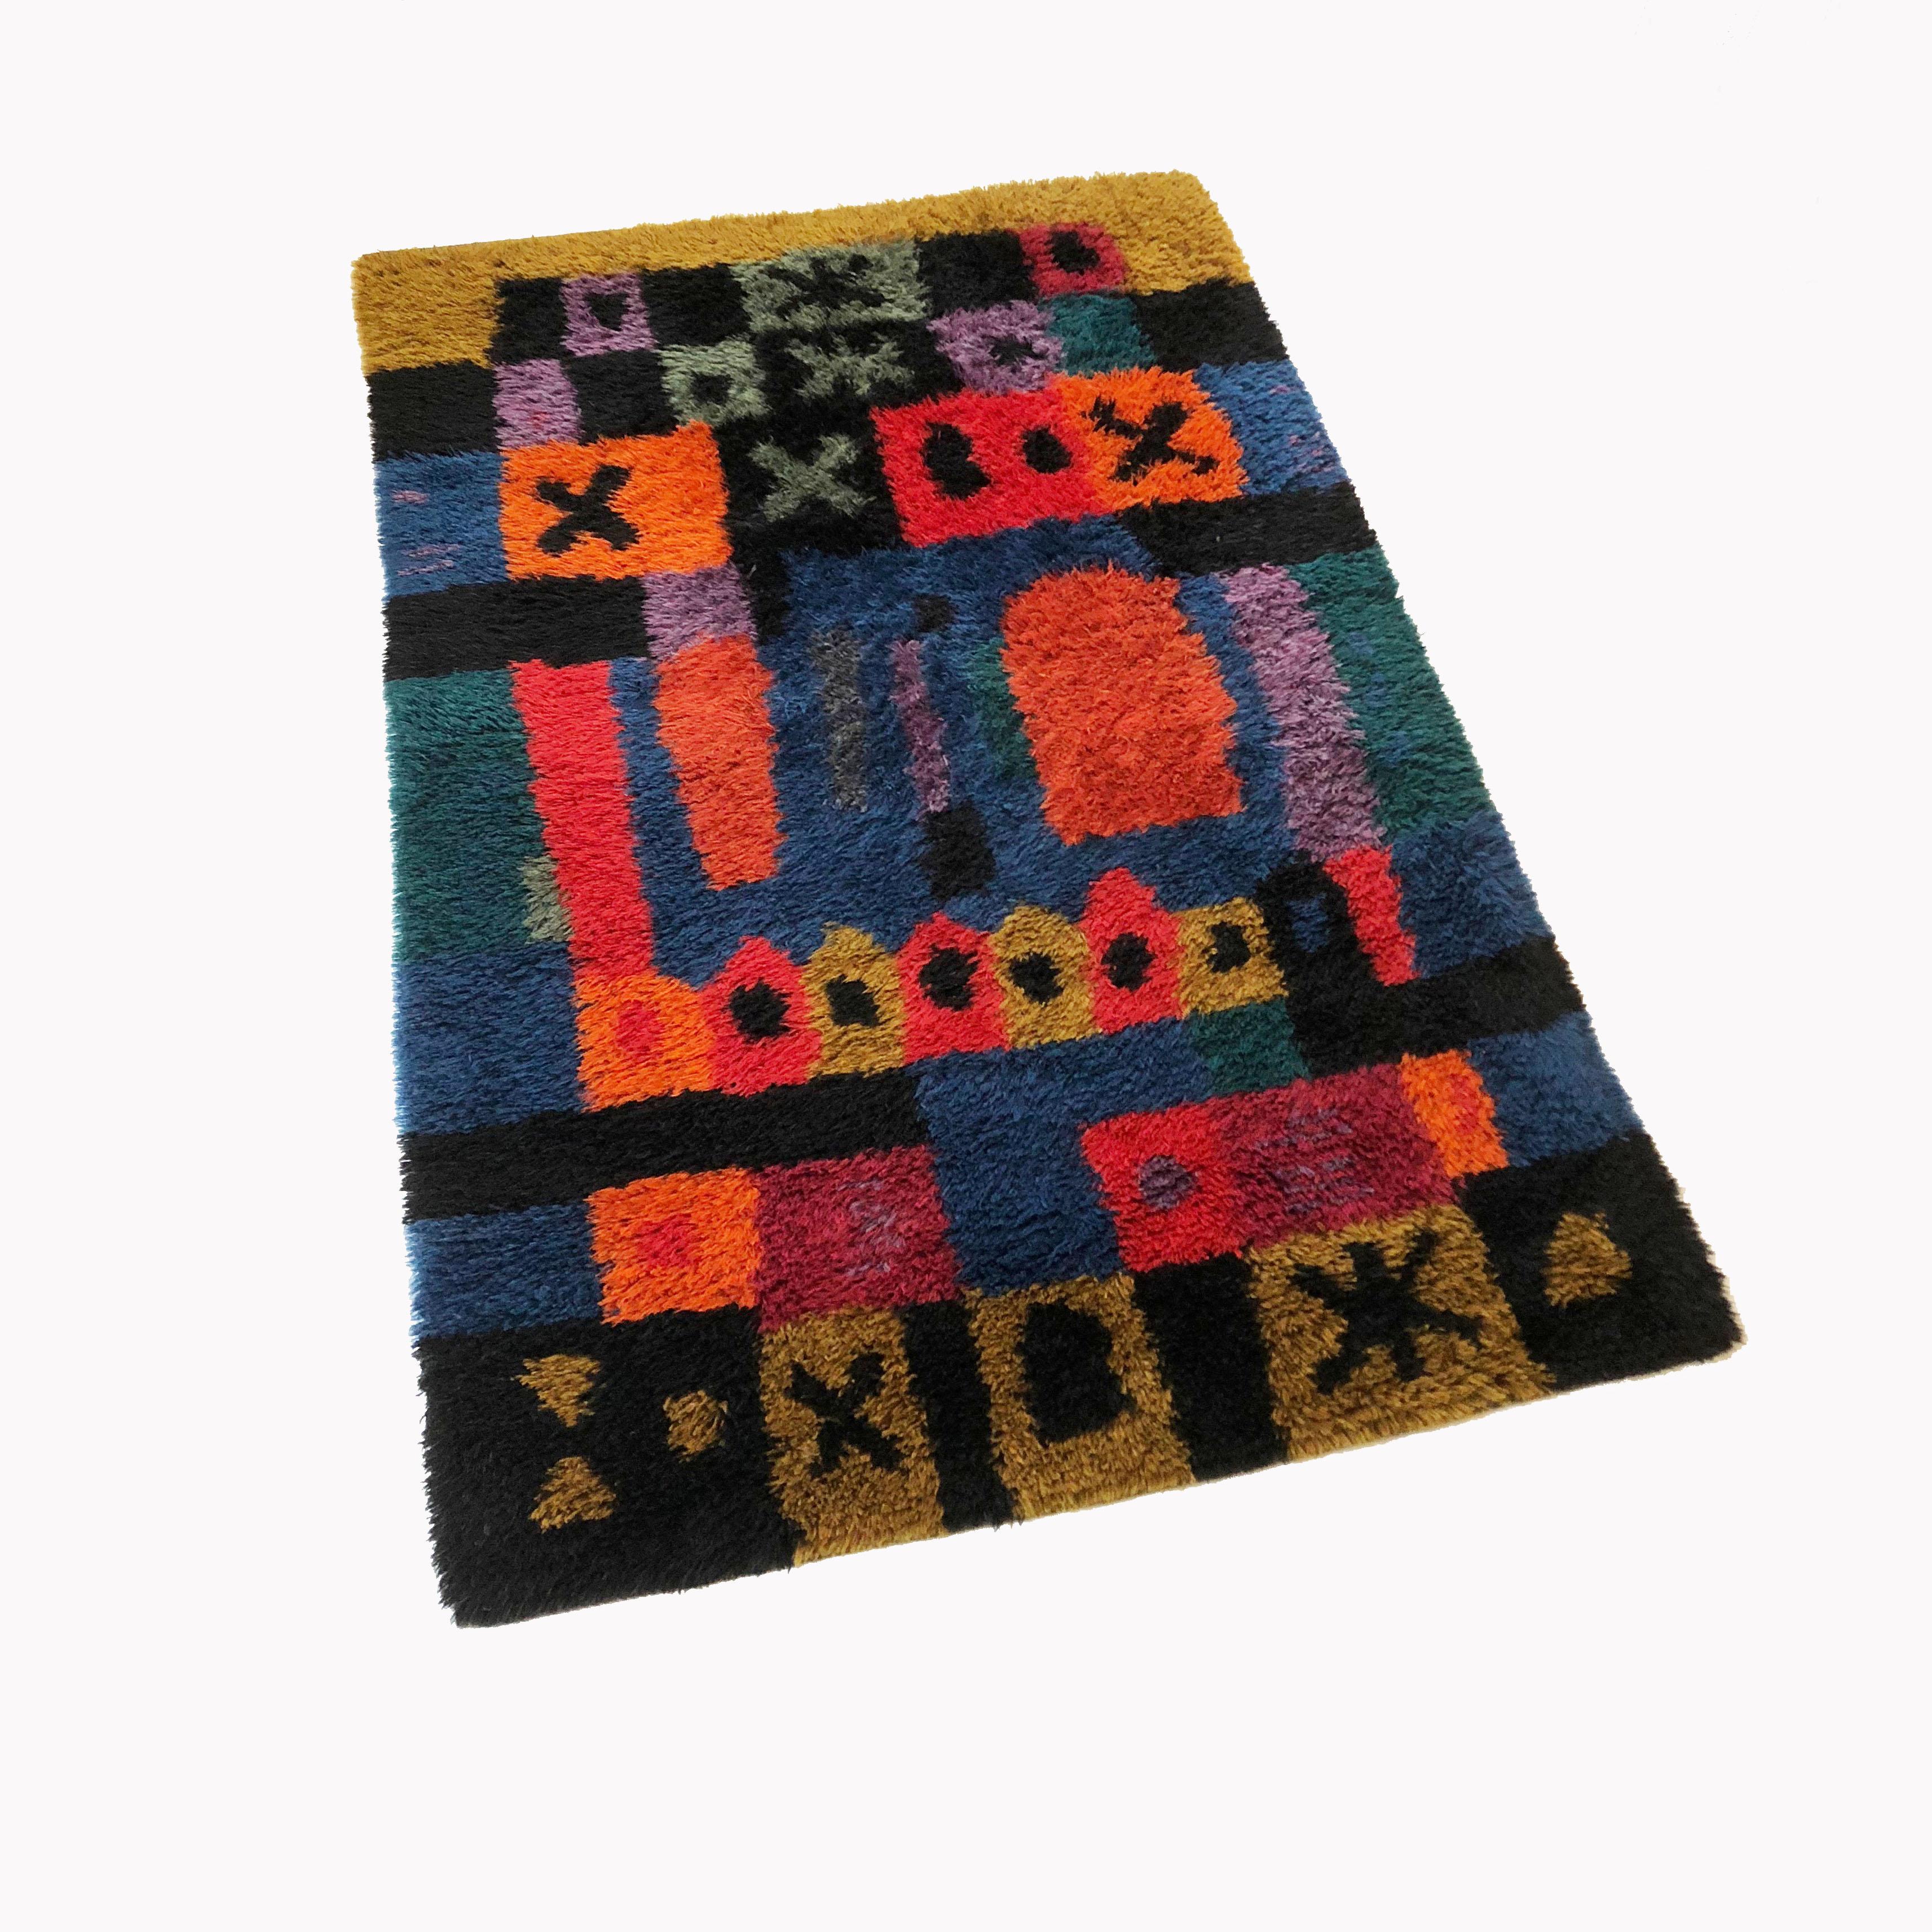 Article:

Original huge 1950s Rya rug 